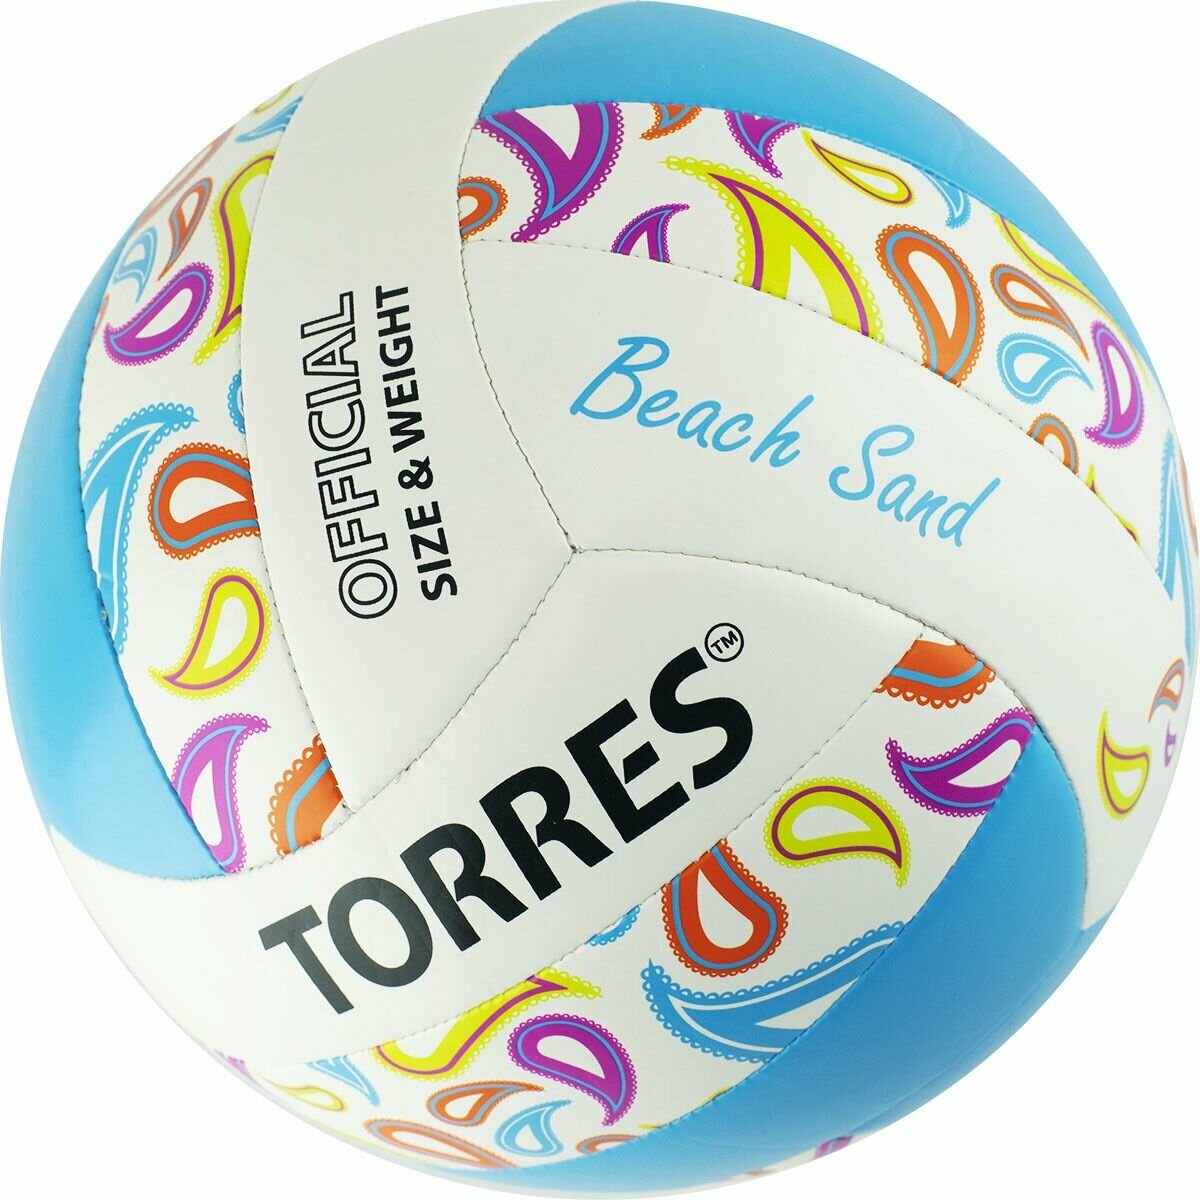 Мяч вол. TORRES Beach Sand Blue, арт. V32095B, р.5